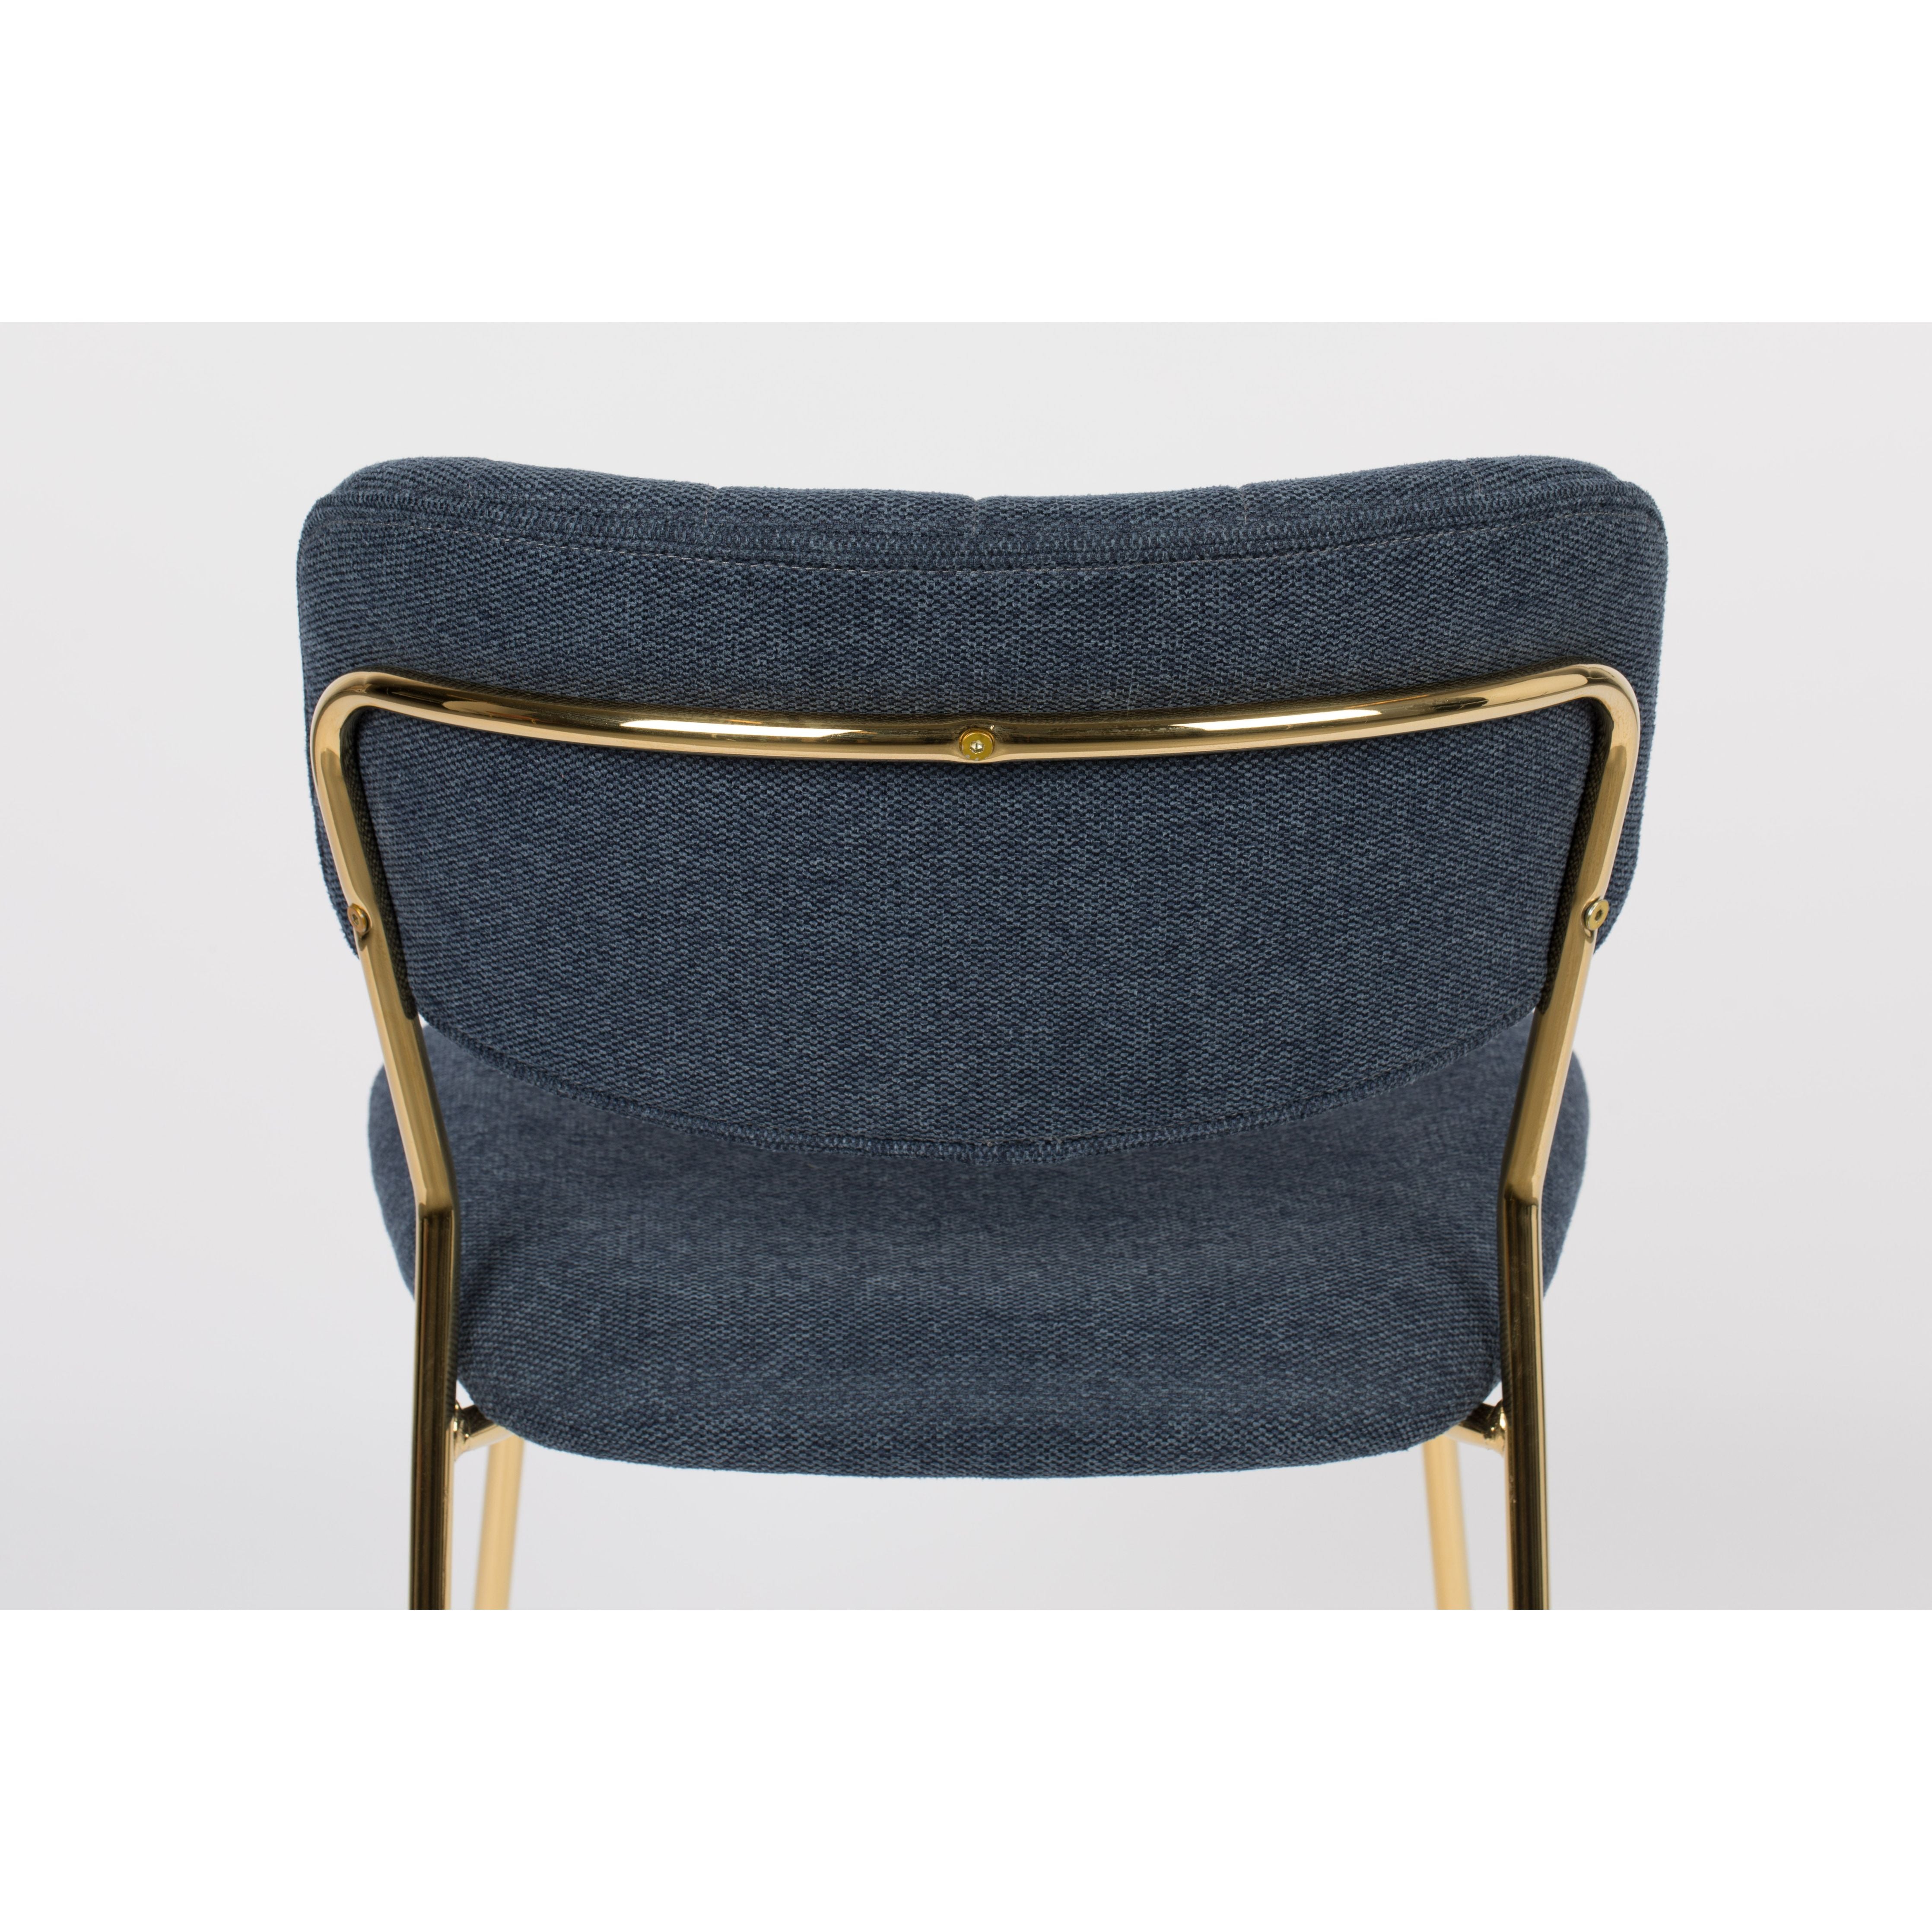 Chair jolien gold/dark blue